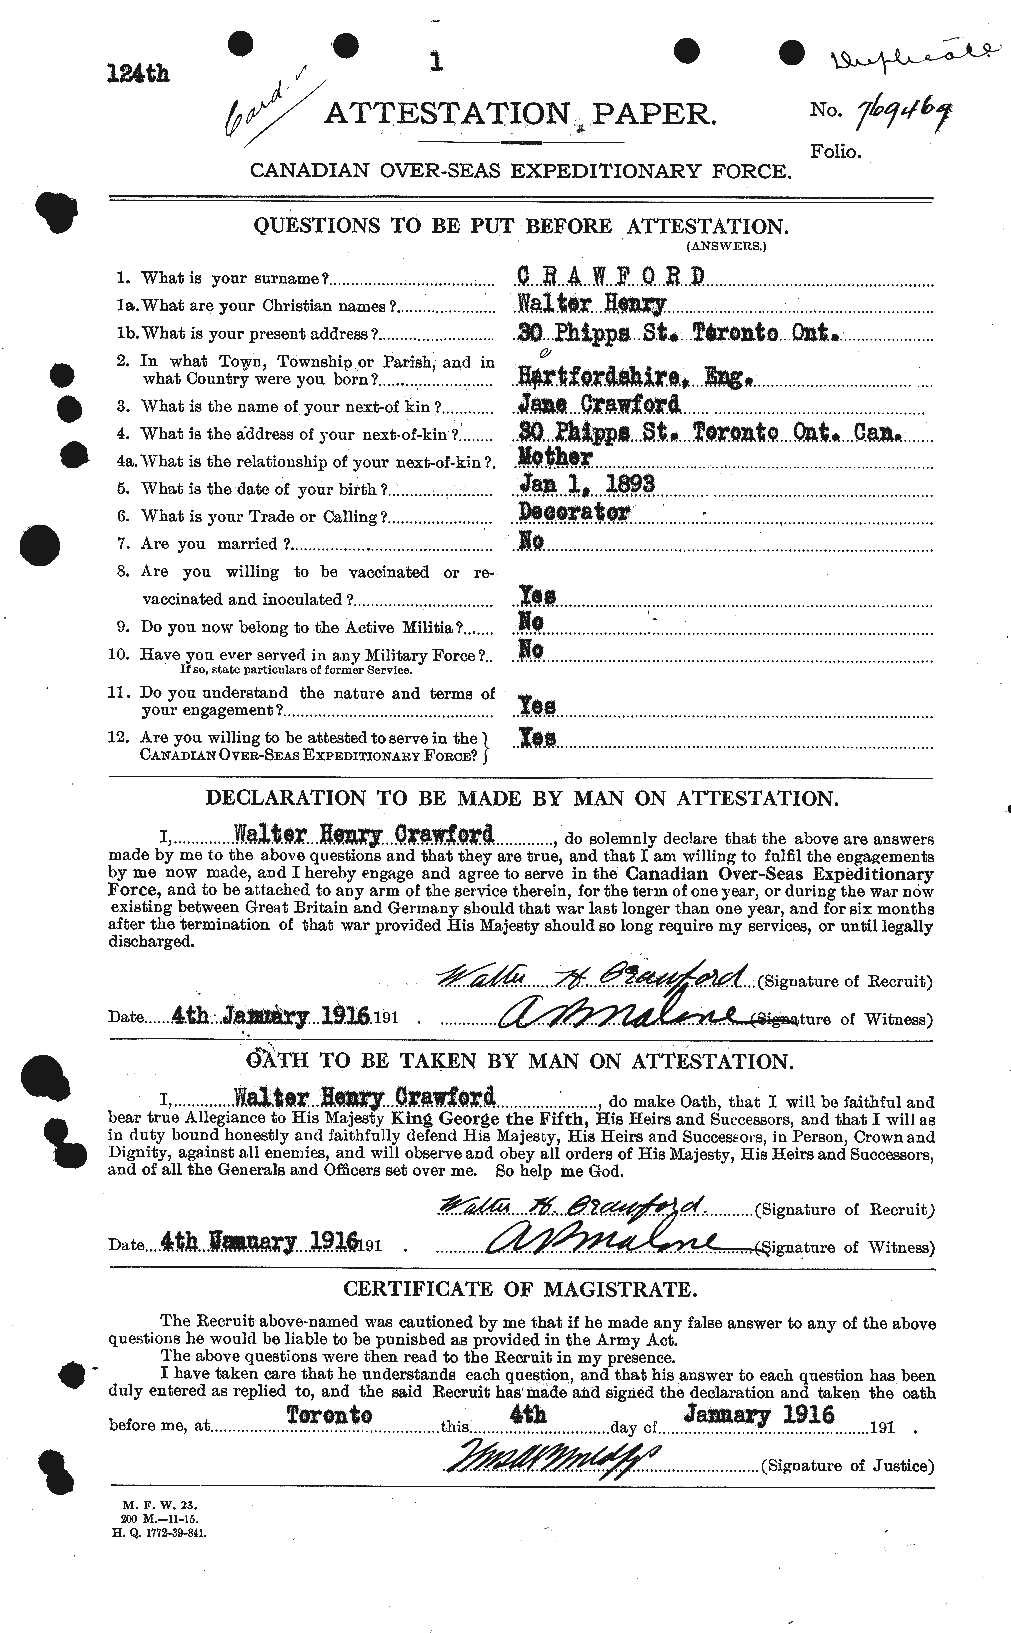 Dossiers du Personnel de la Première Guerre mondiale - CEC 061173a